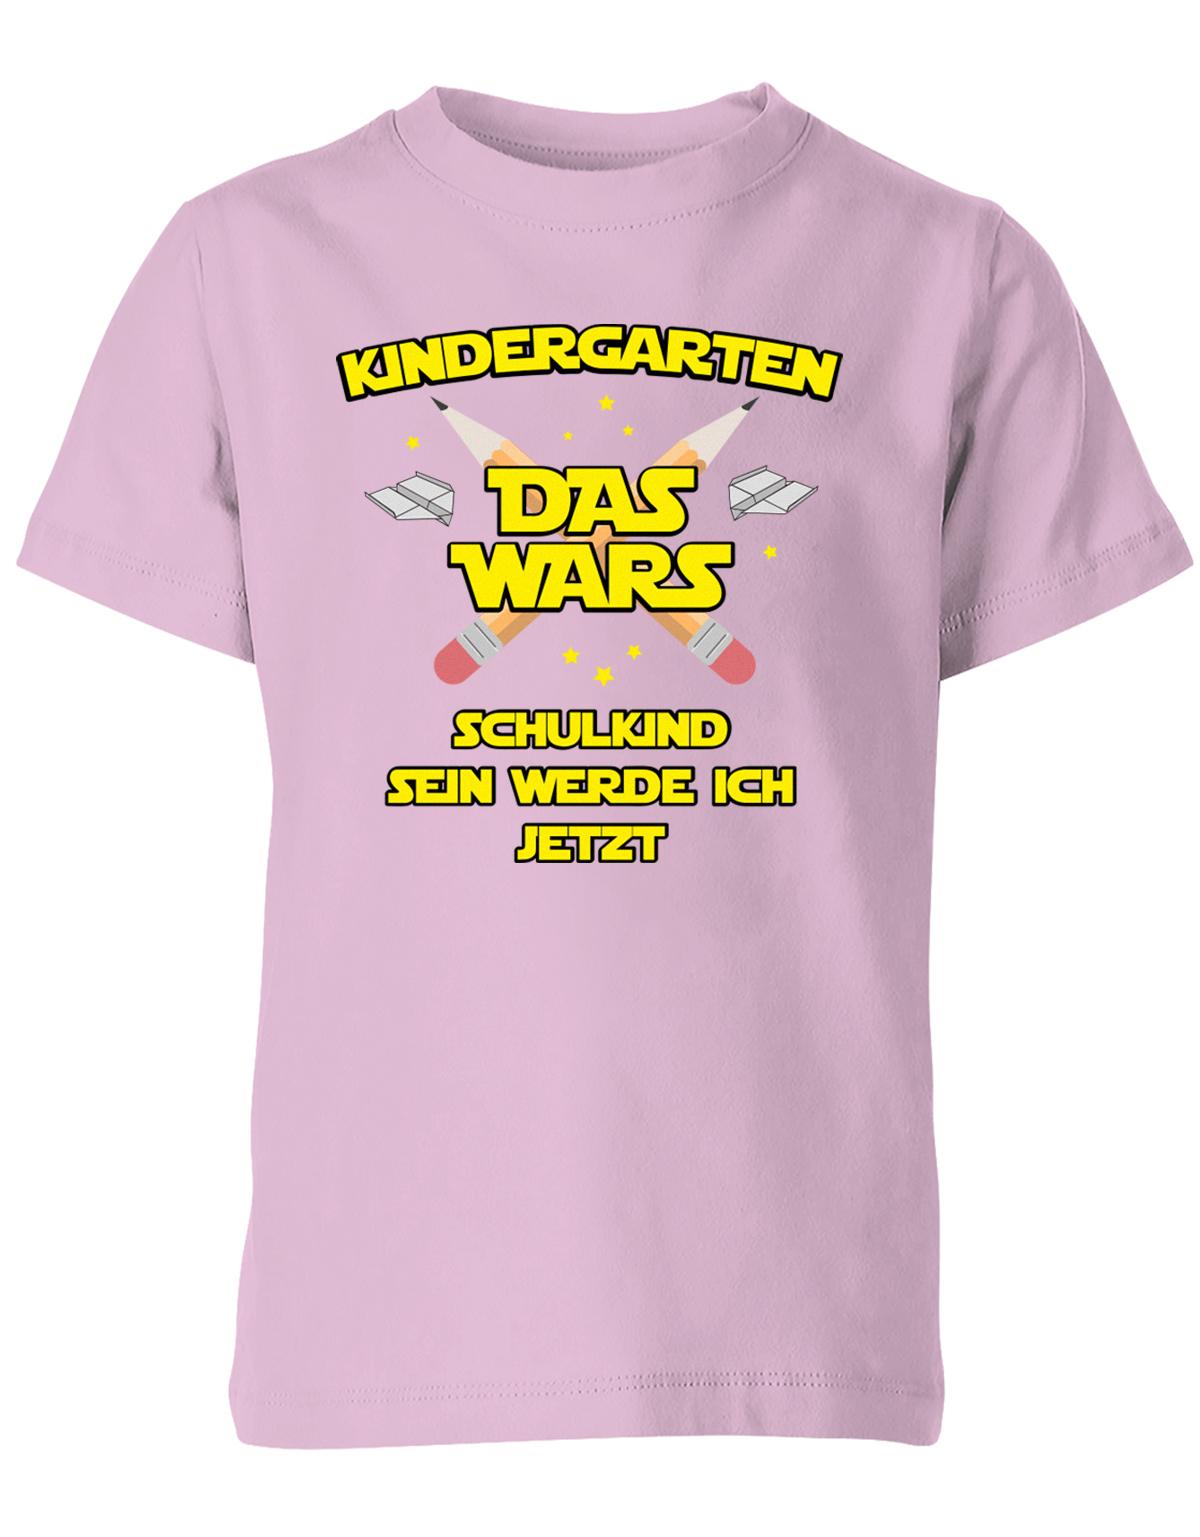 Kindergarten Das Wars Schulkind sein werde ich jetzt - Kita Abgänger Shirt Rosa